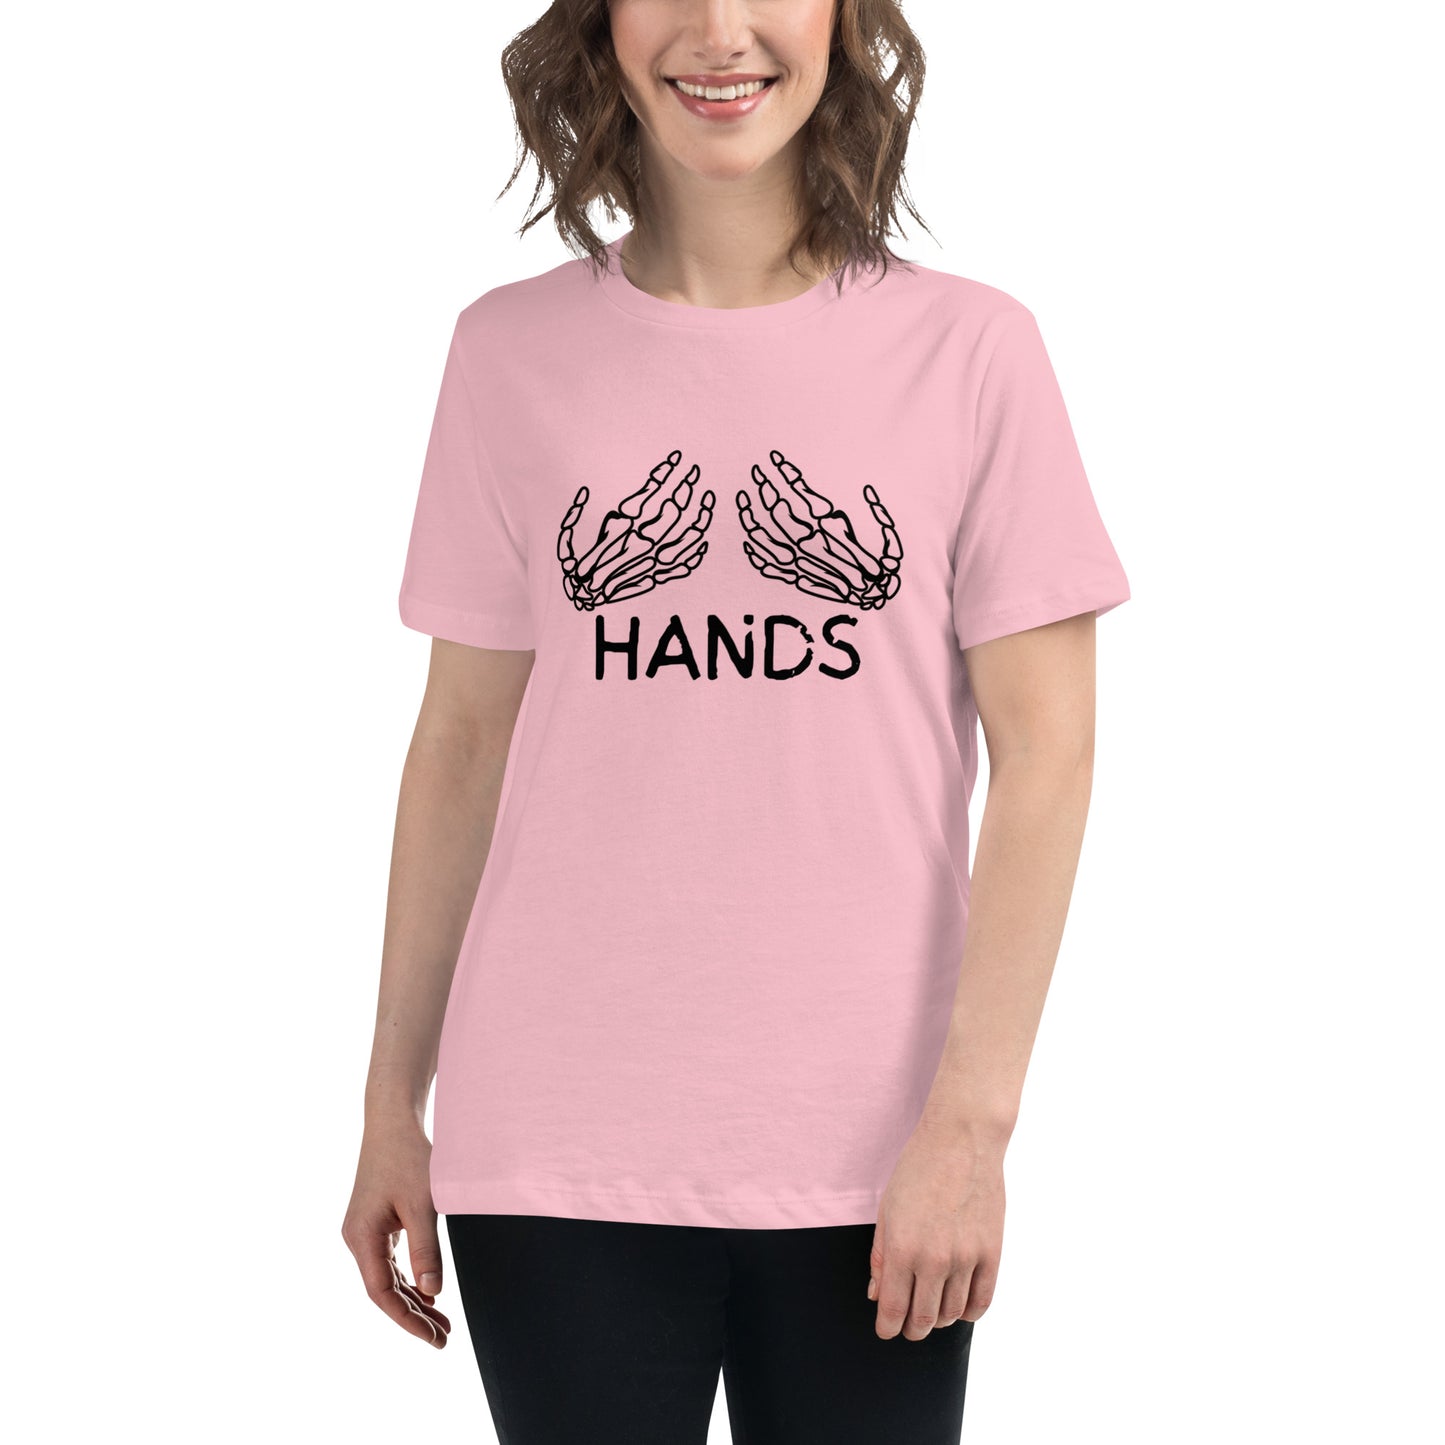 HANDS Women's Relaxed T-Shirt